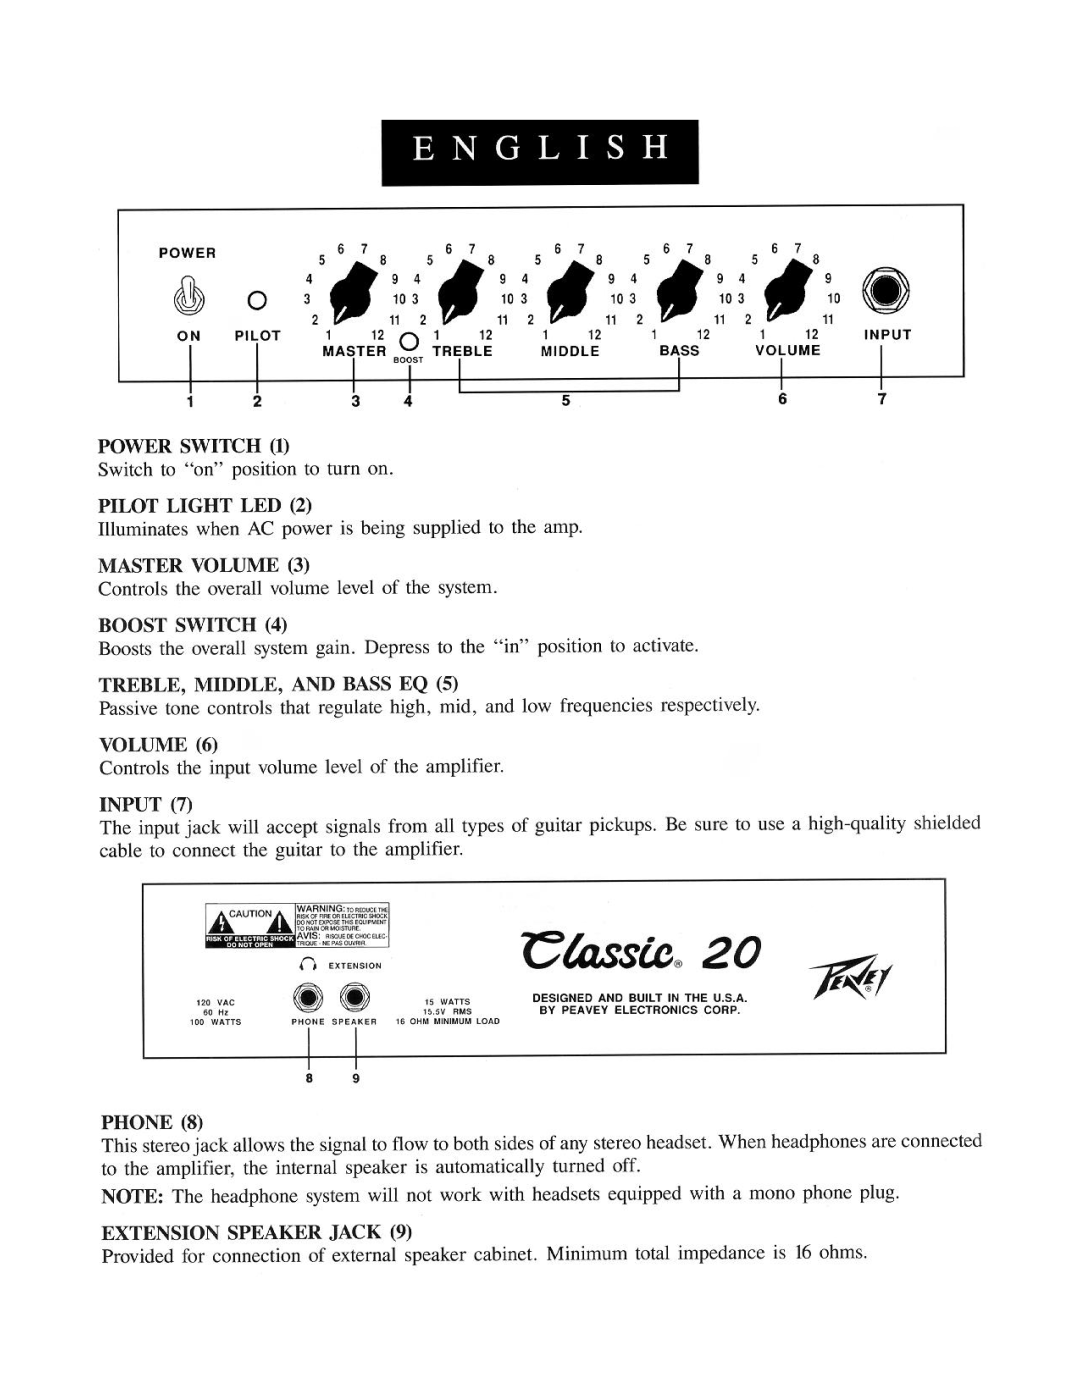 Peavey Classic 20 manual 